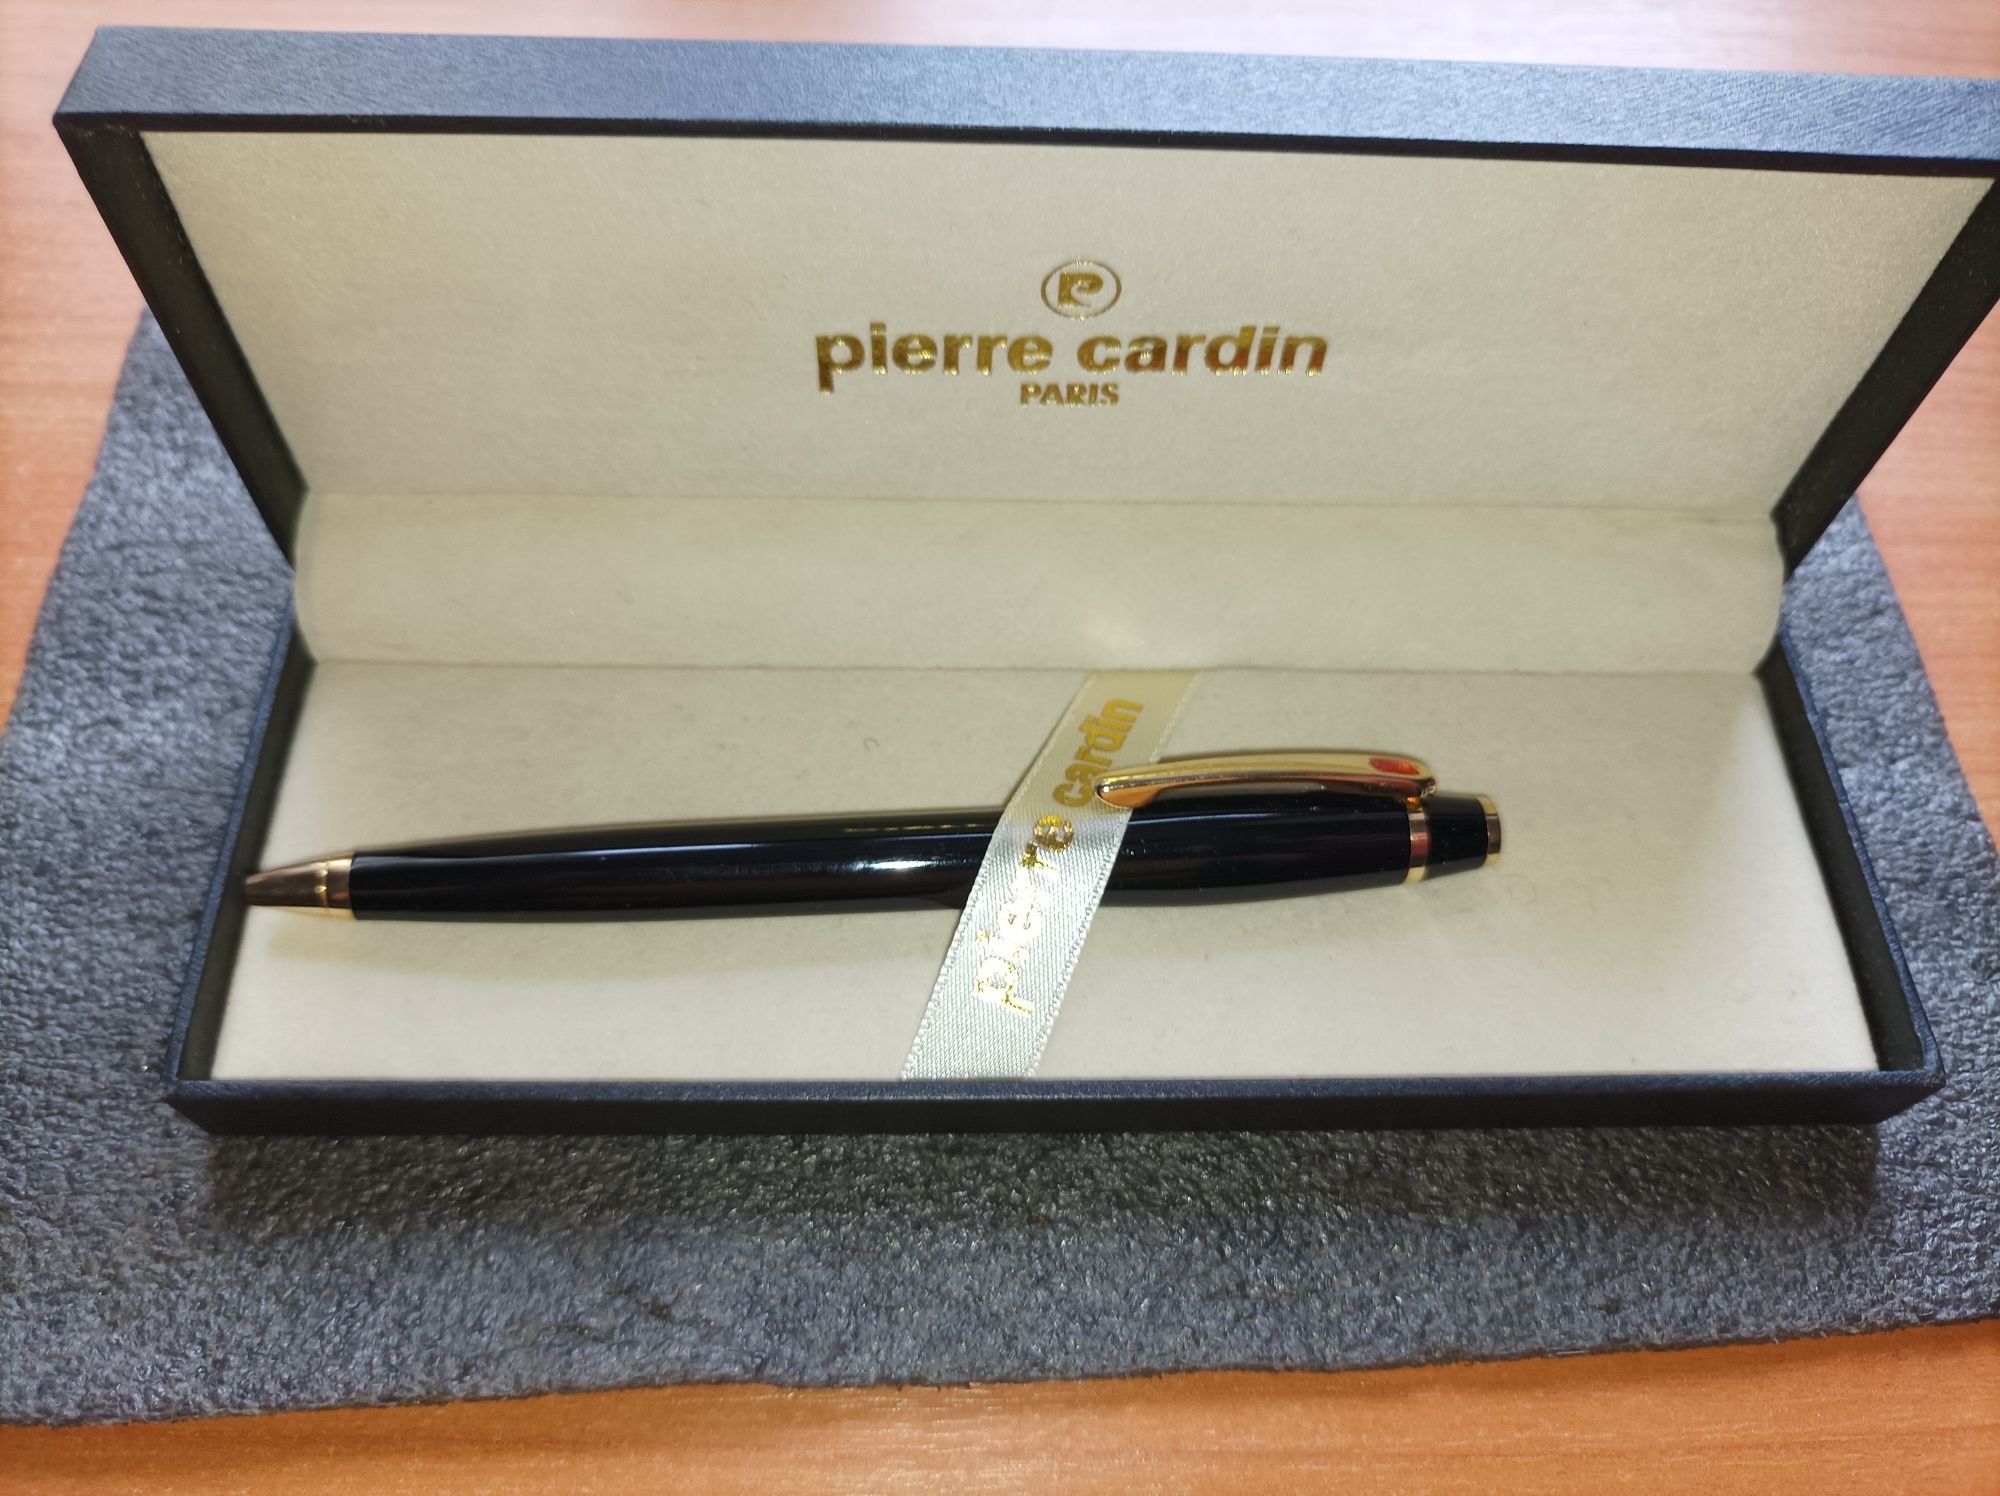 Ручка Pierre cardin